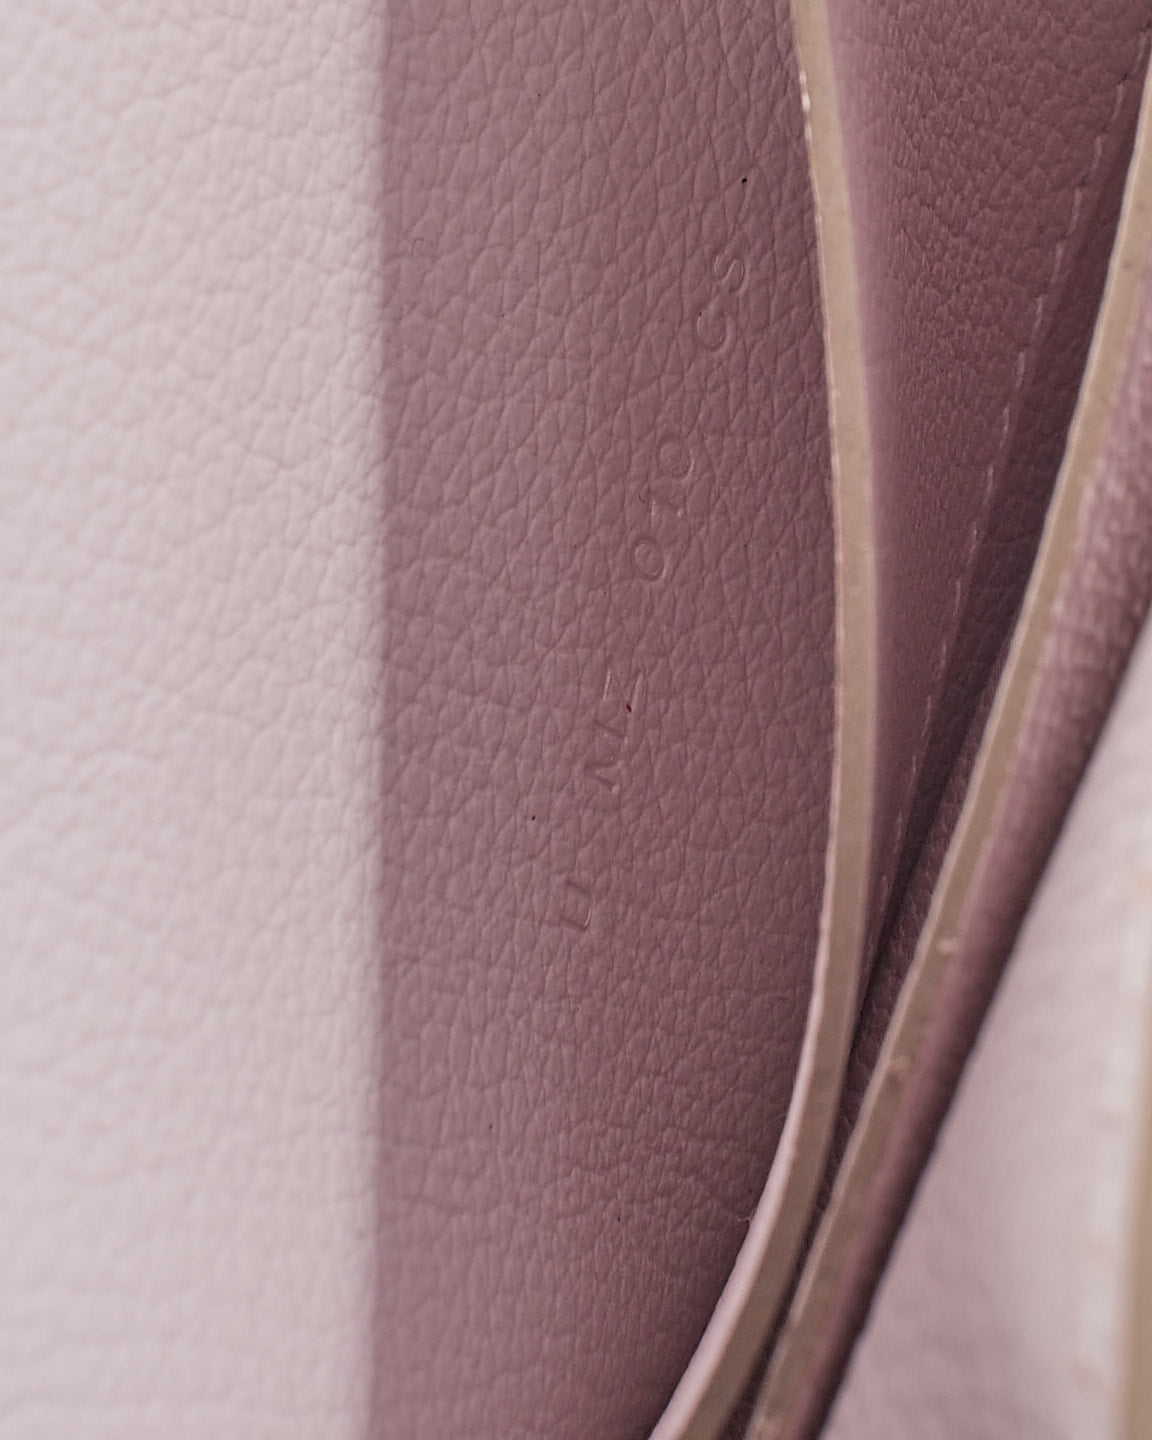 Hermès Light Pink Leather Slim Constance Wallet